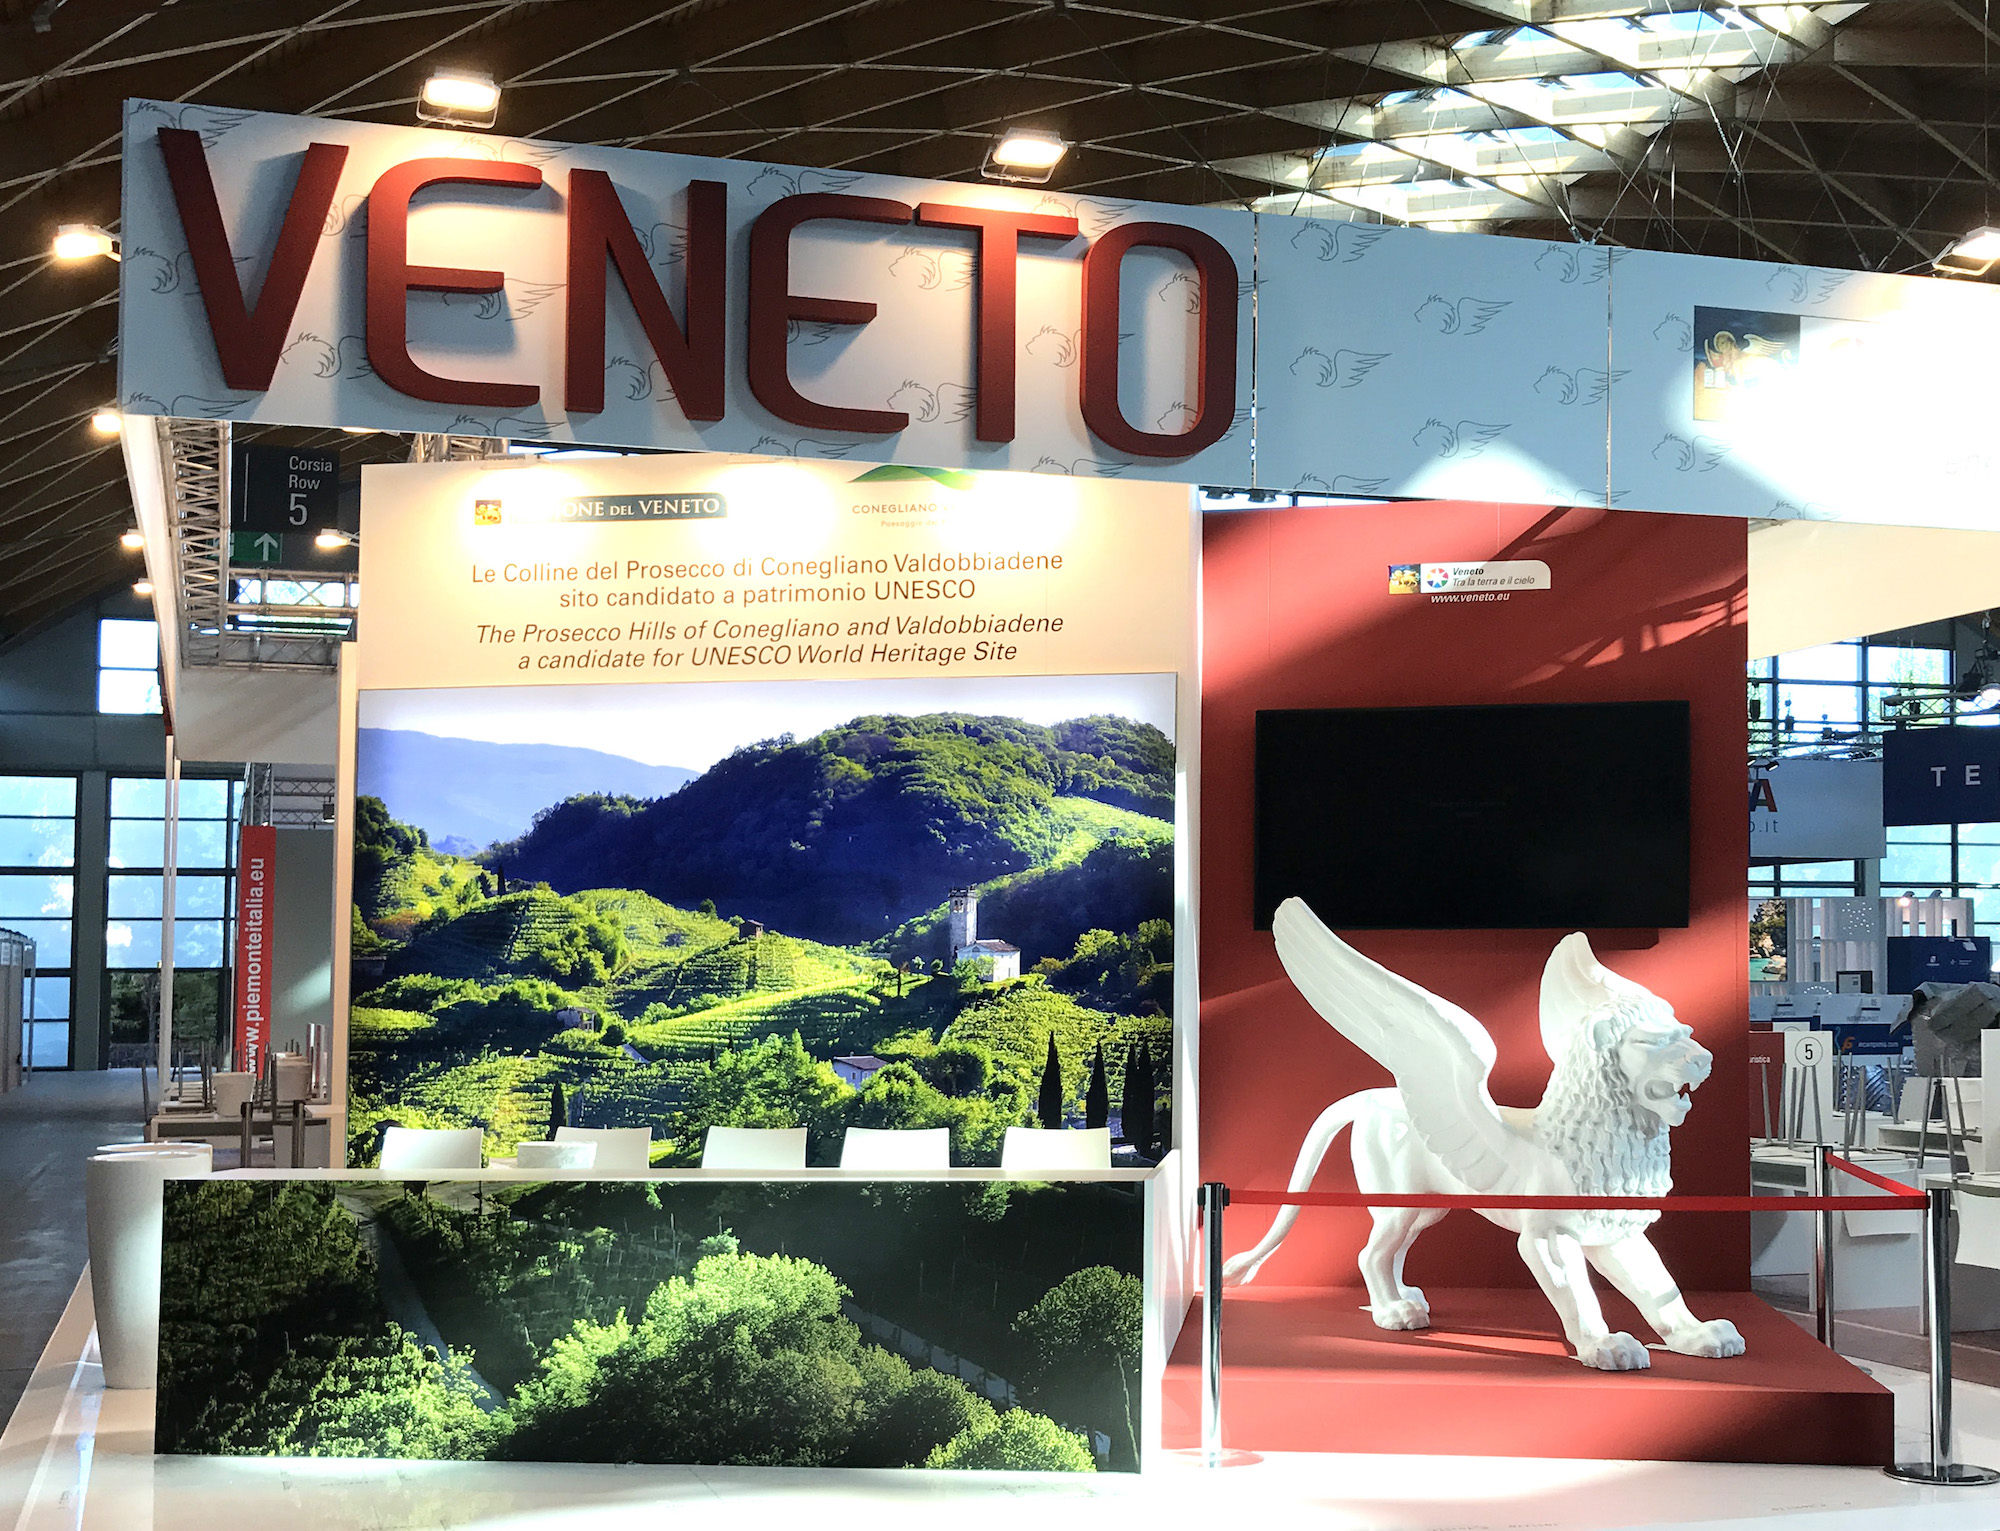 Tosetto at TTG Incontri 2017 for the Veneto Region